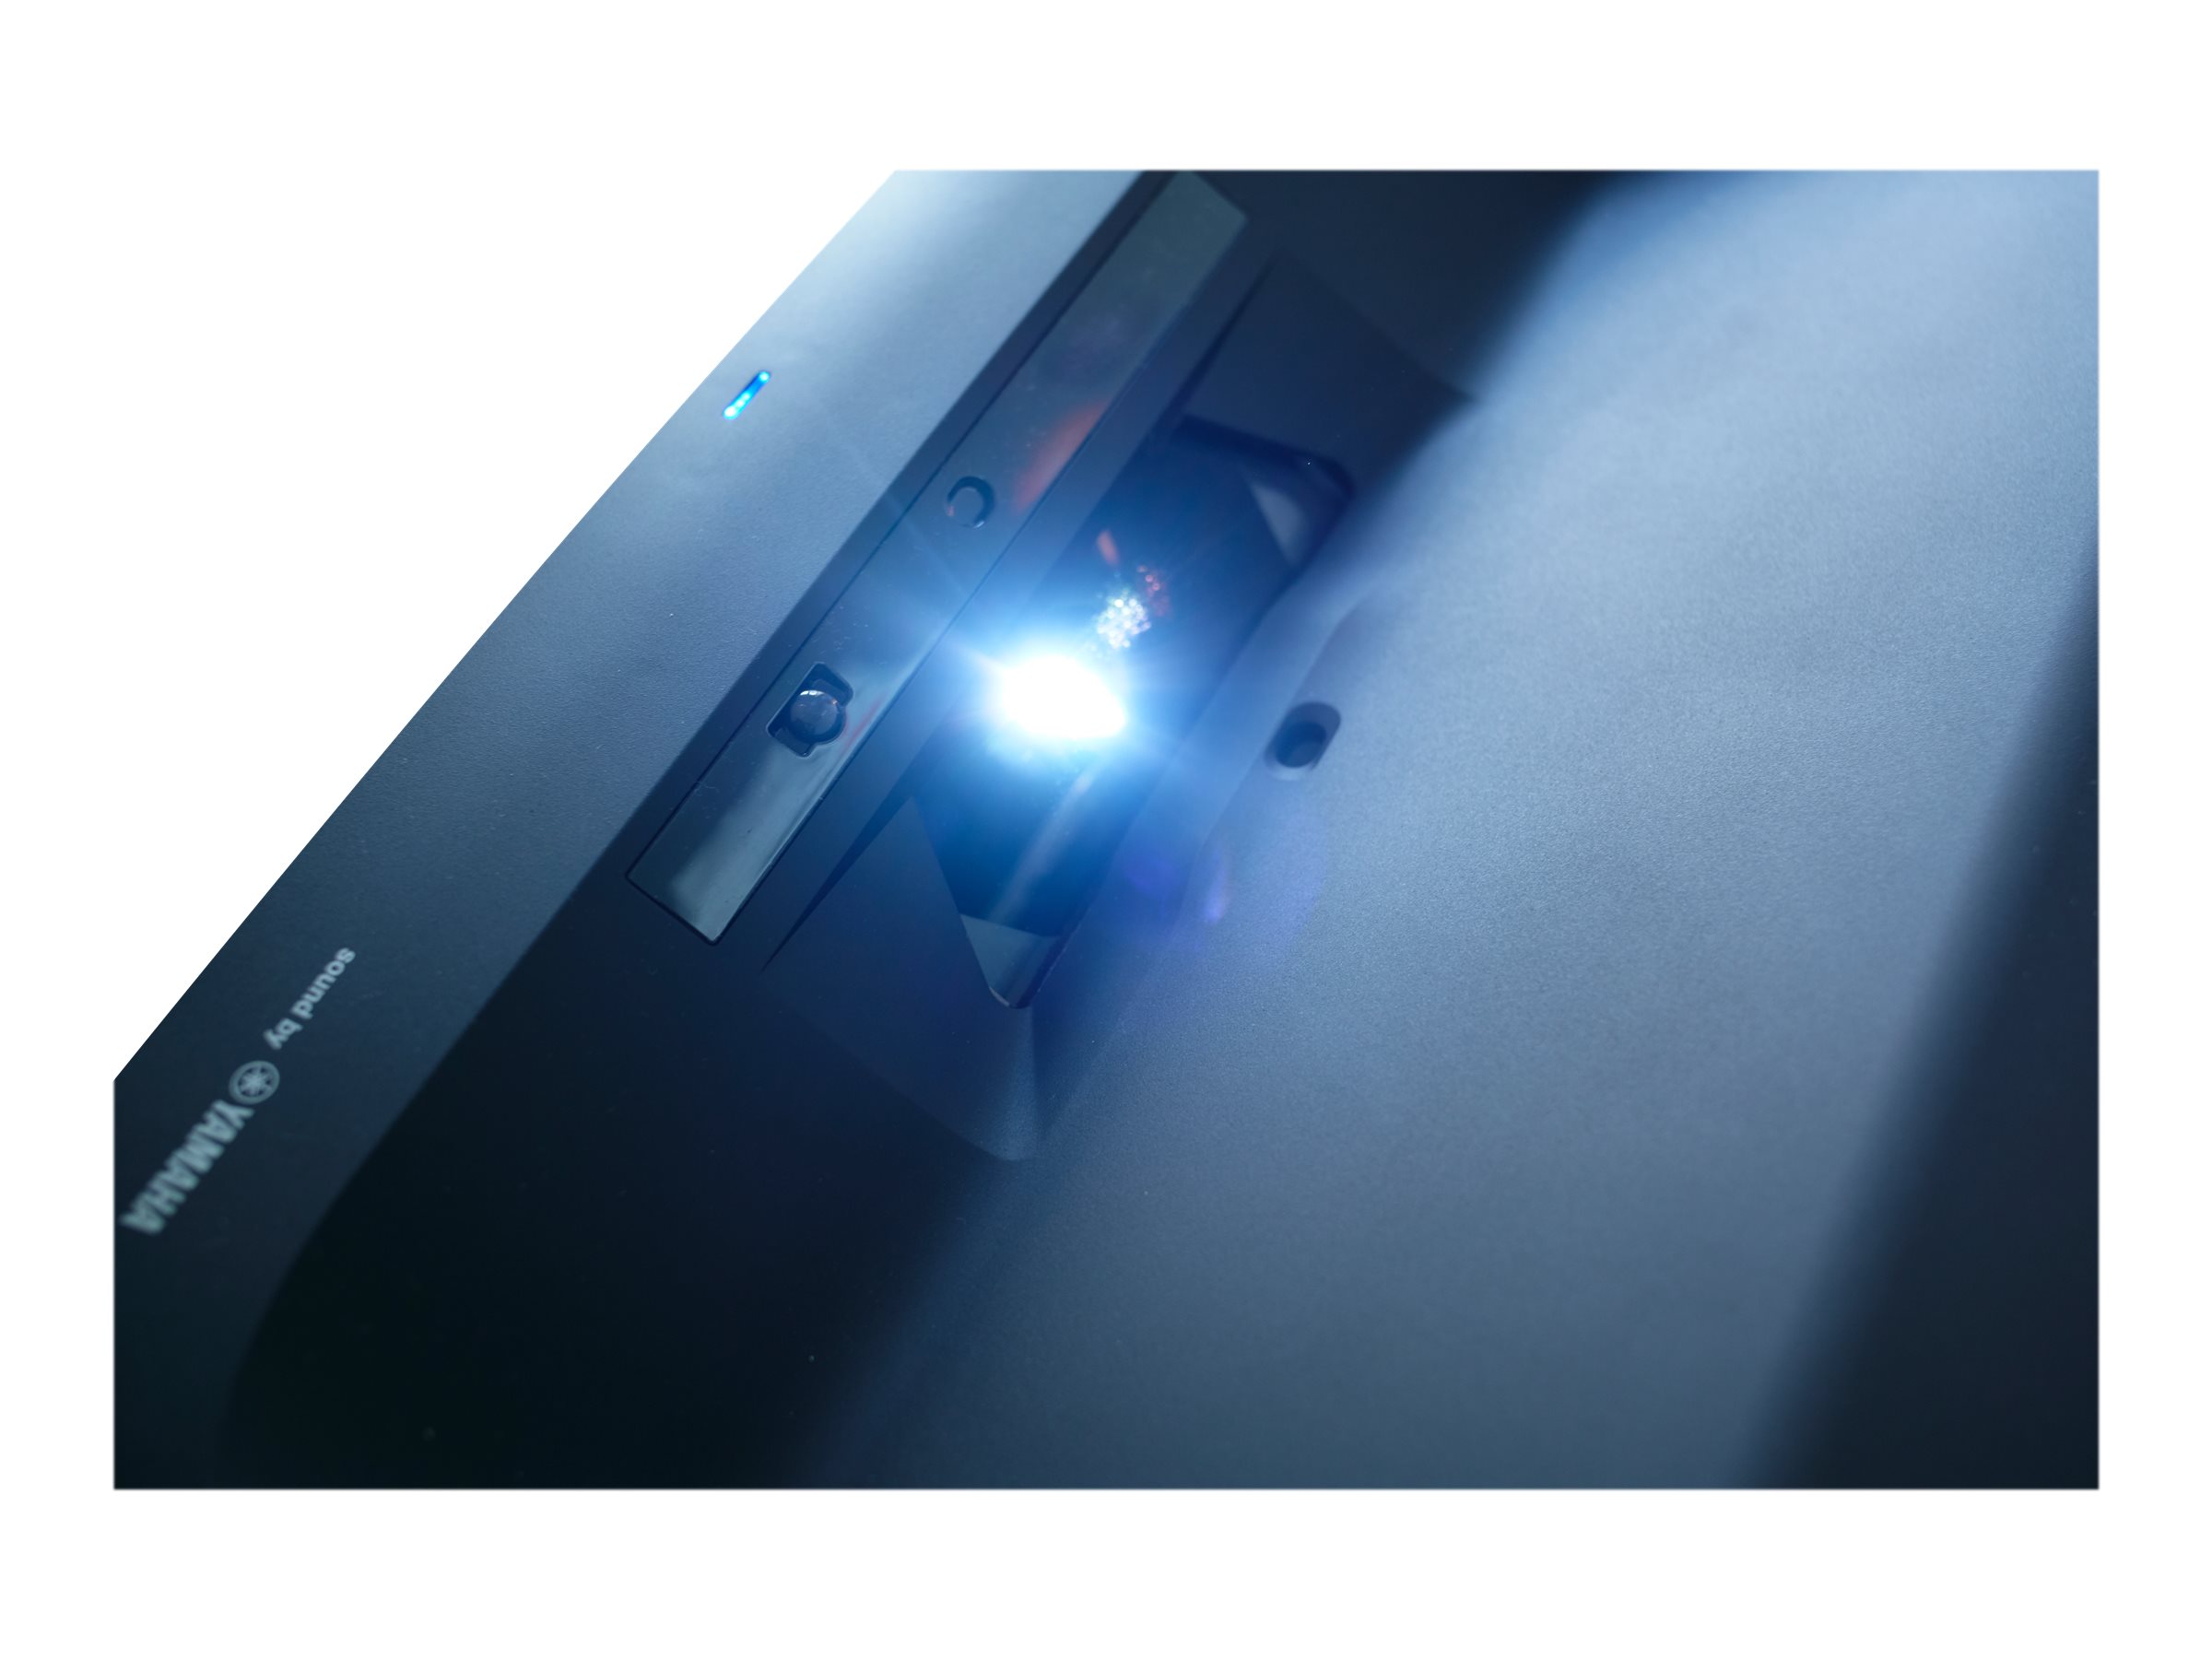 Epson EH-LS300B - Projecteur 3LCD - 3600 lumens (blanc) - 3600 lumens (couleur) - Full HD (1920 x 1080) - 16:9 - 1080p - sans fil 802.11ac - noir - Android TV - V11HA07140 - Projecteurs pour home cinema